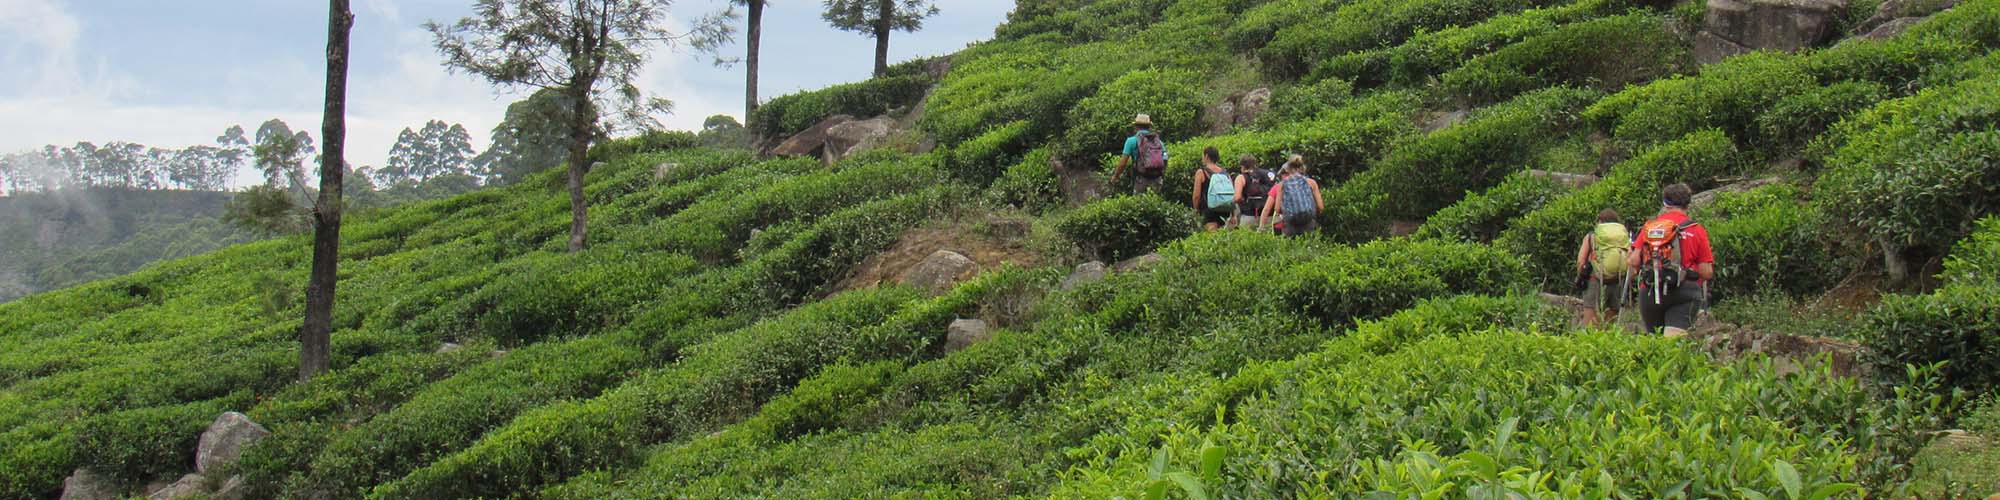 Tea trails trek, Haputale, Sri Lanka